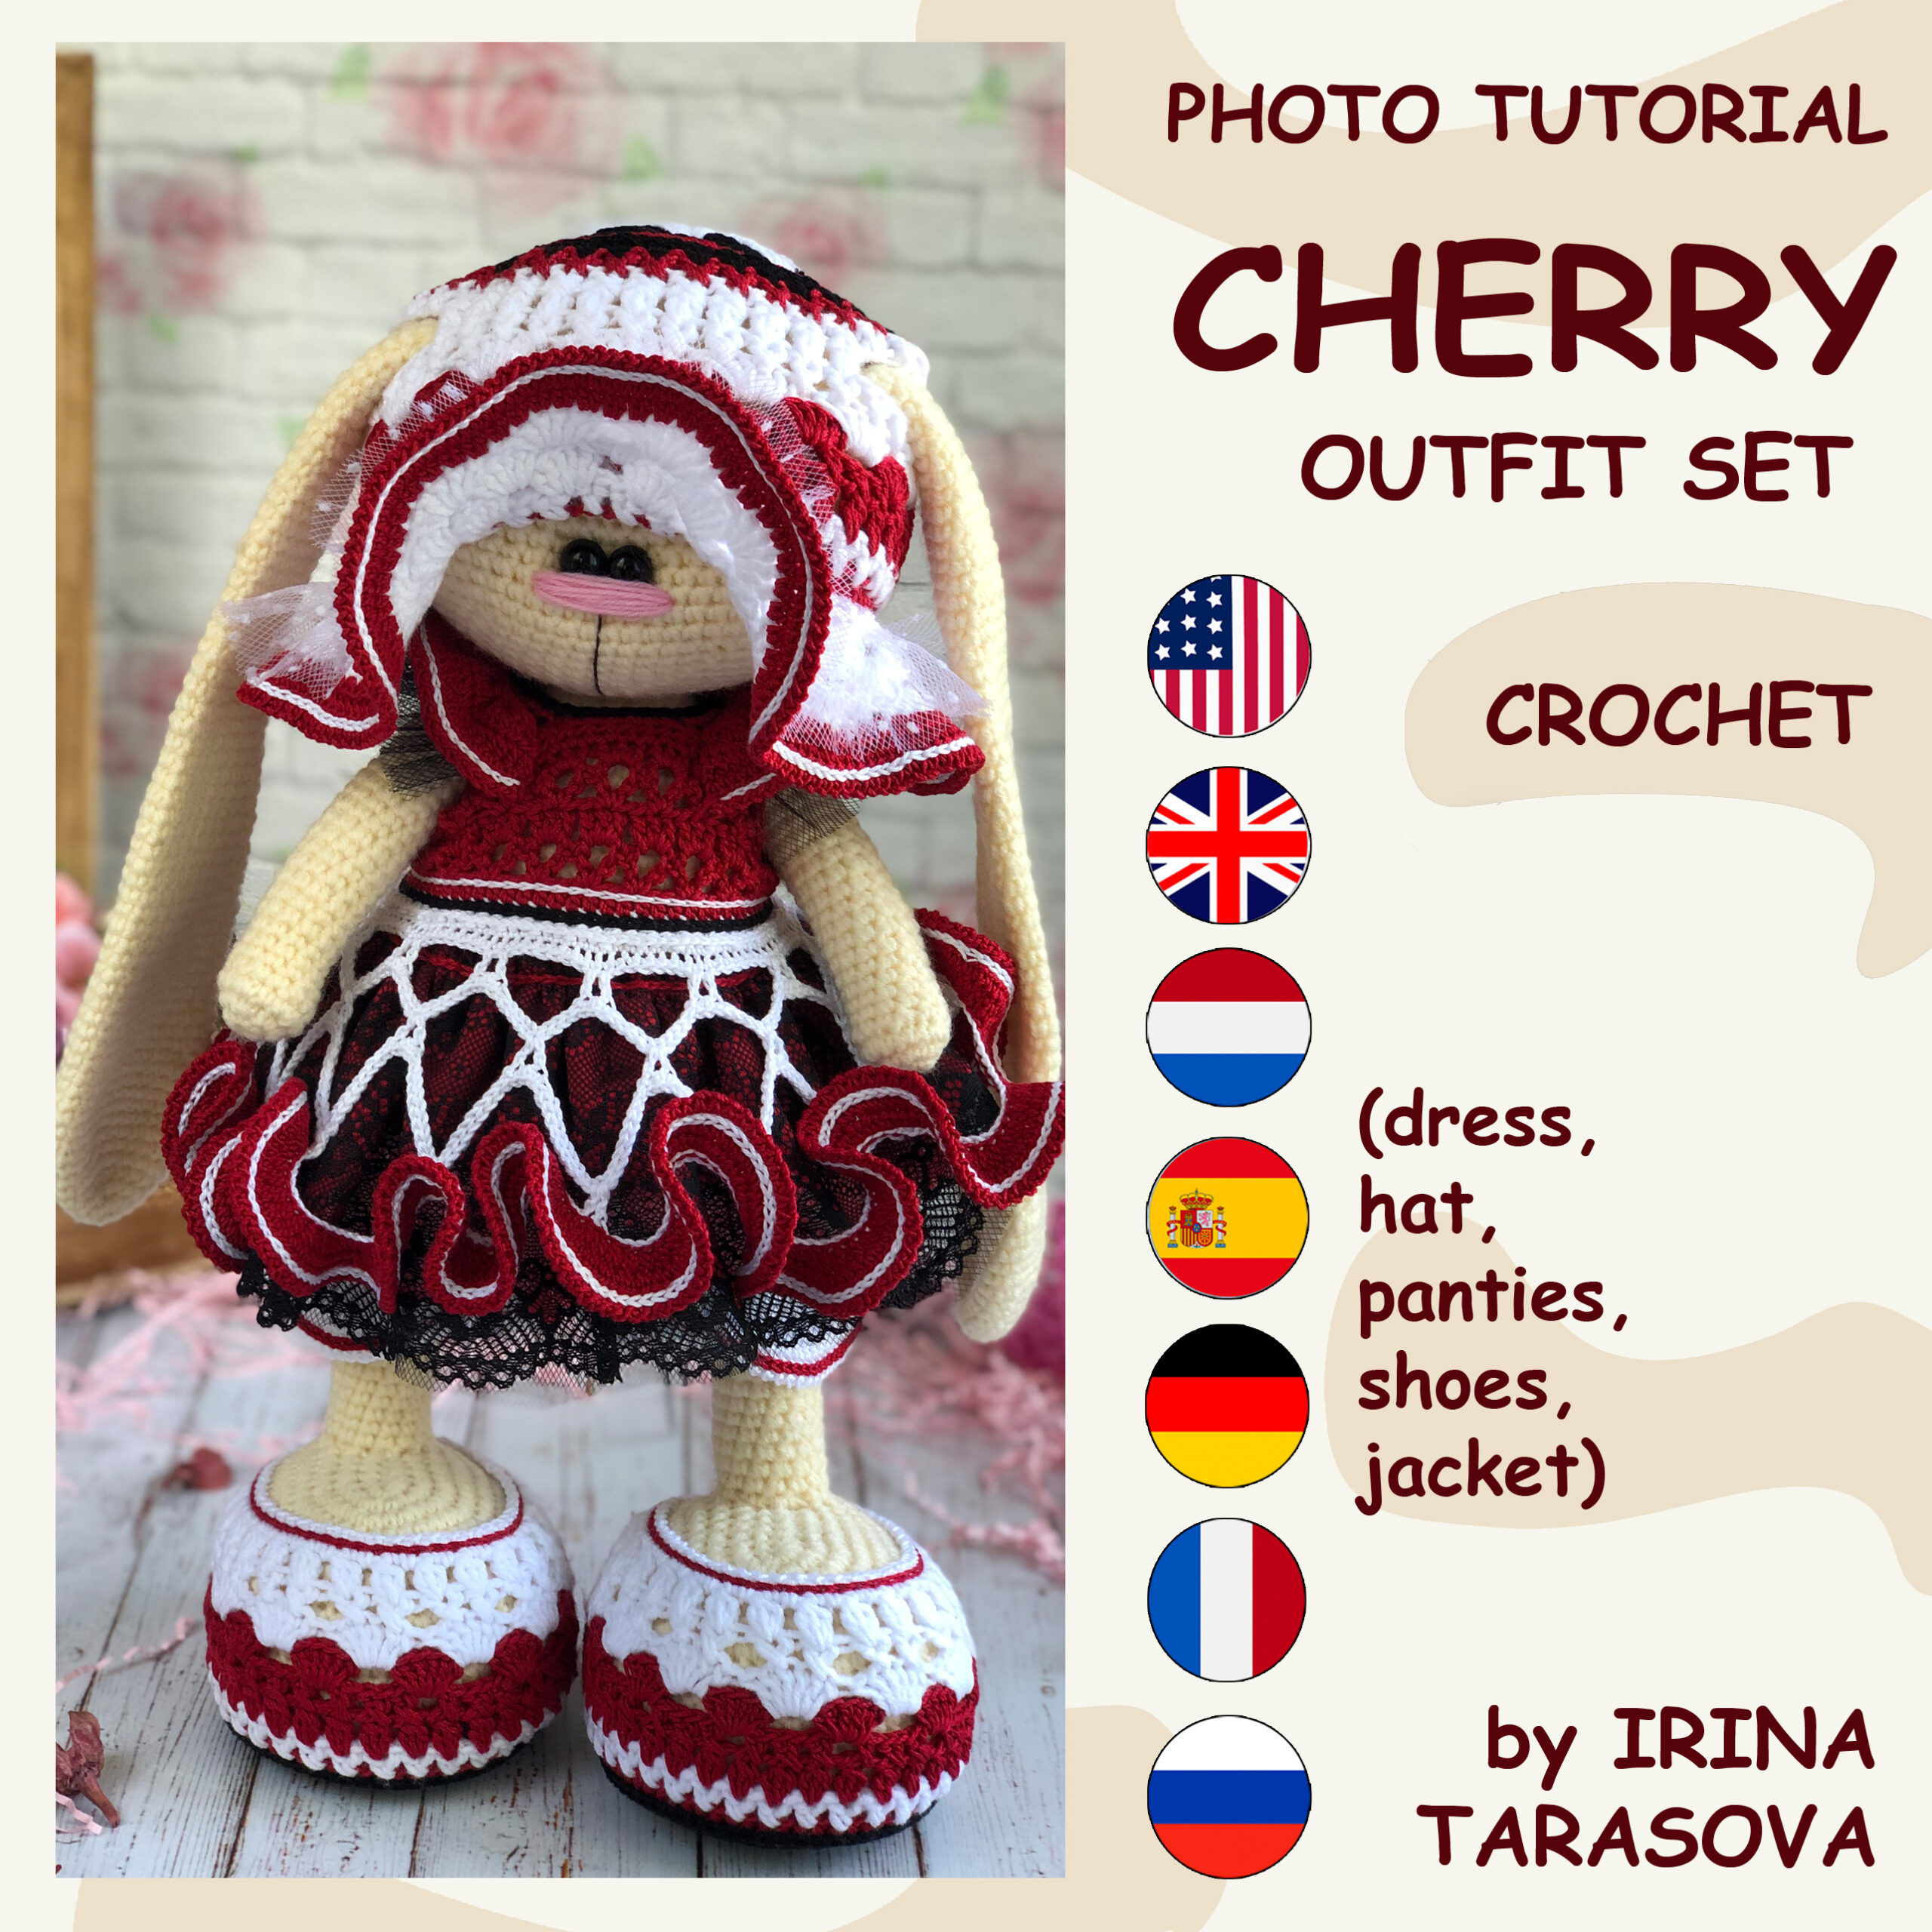 Cherries Crochet Kit for Beginners